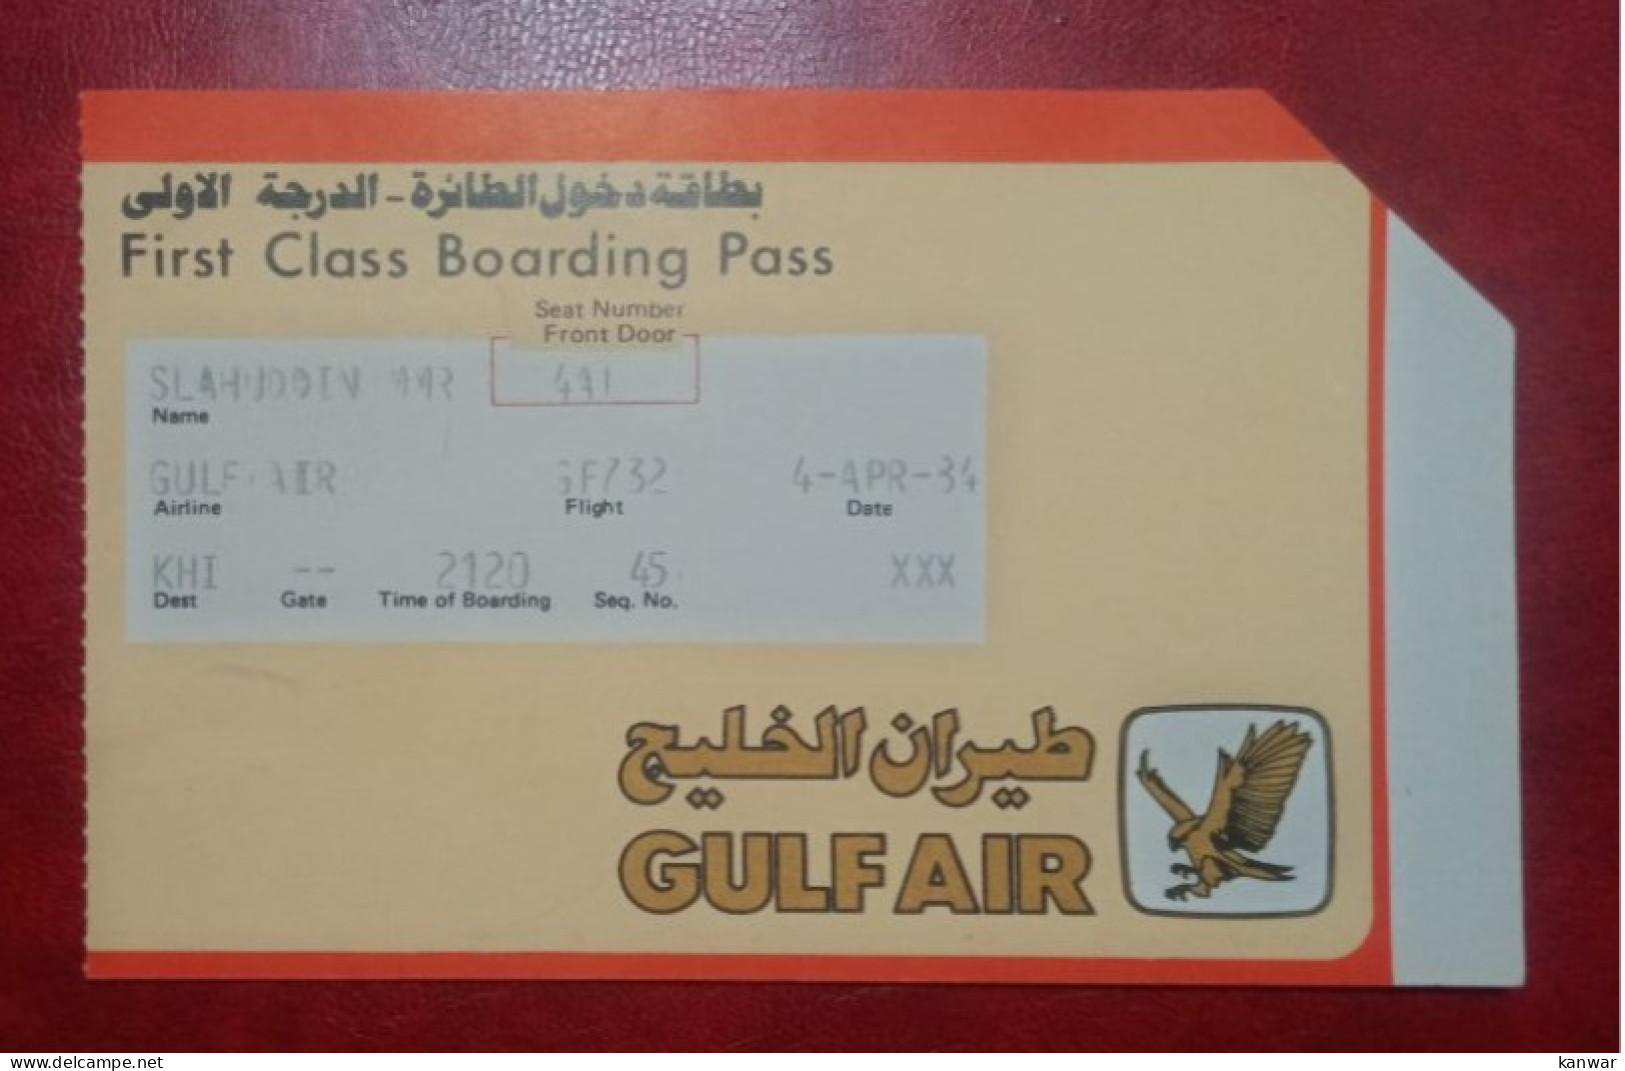 GULF AIR AIRLINES PASSENGER BOARDING PASS FIRST CLASS - Bordkarten